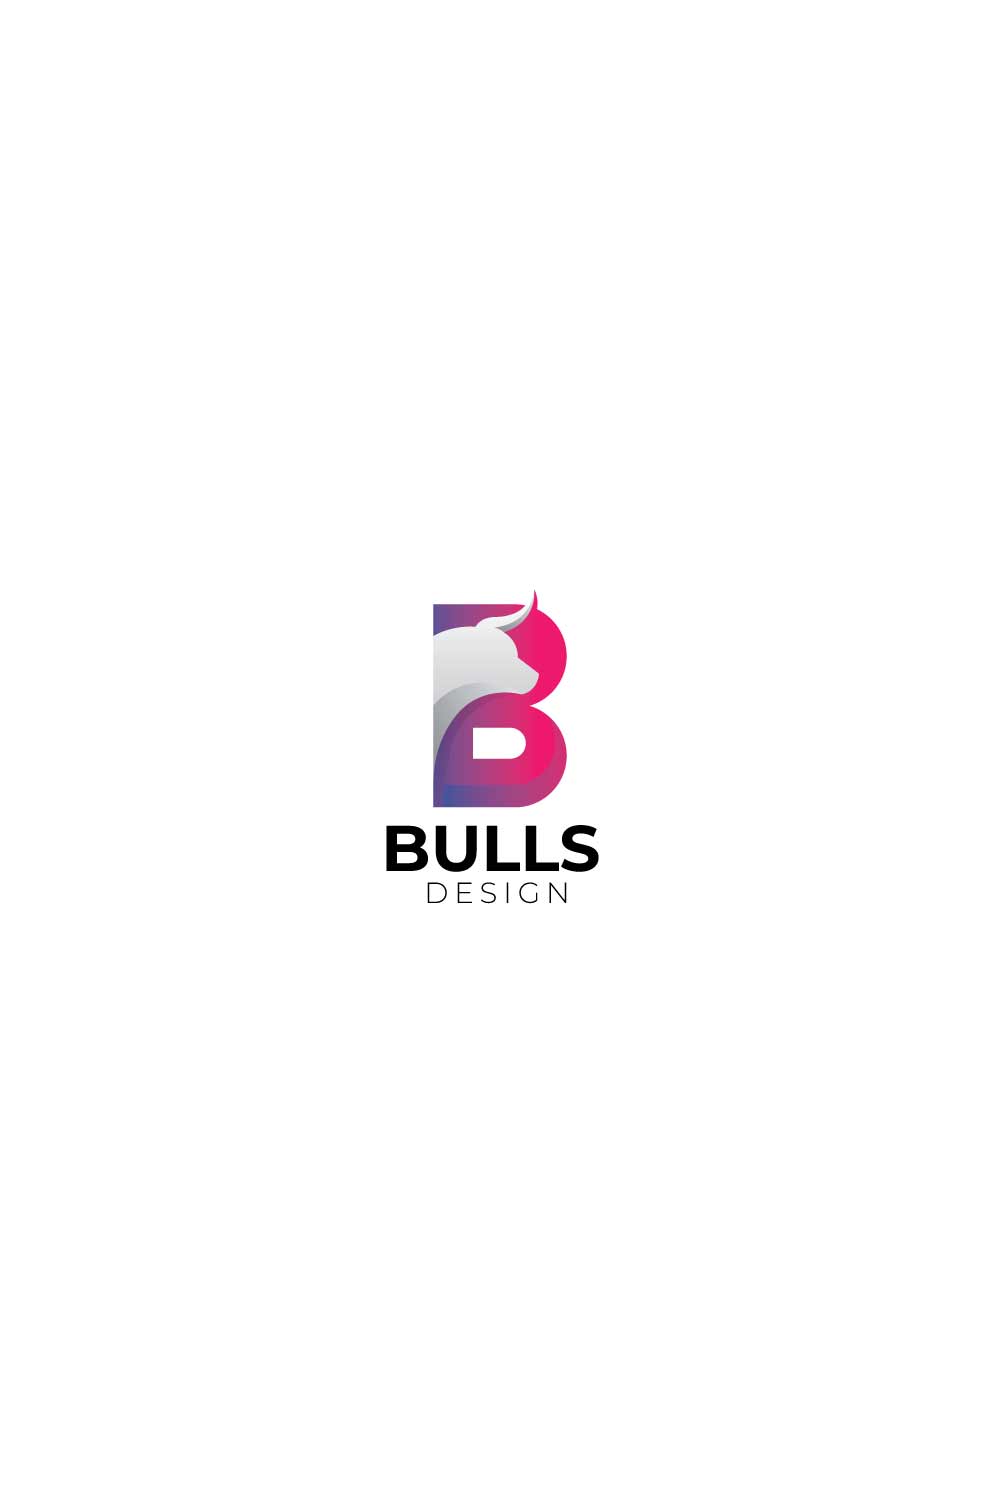 Creative B letter bull logo design pinterest preview image.